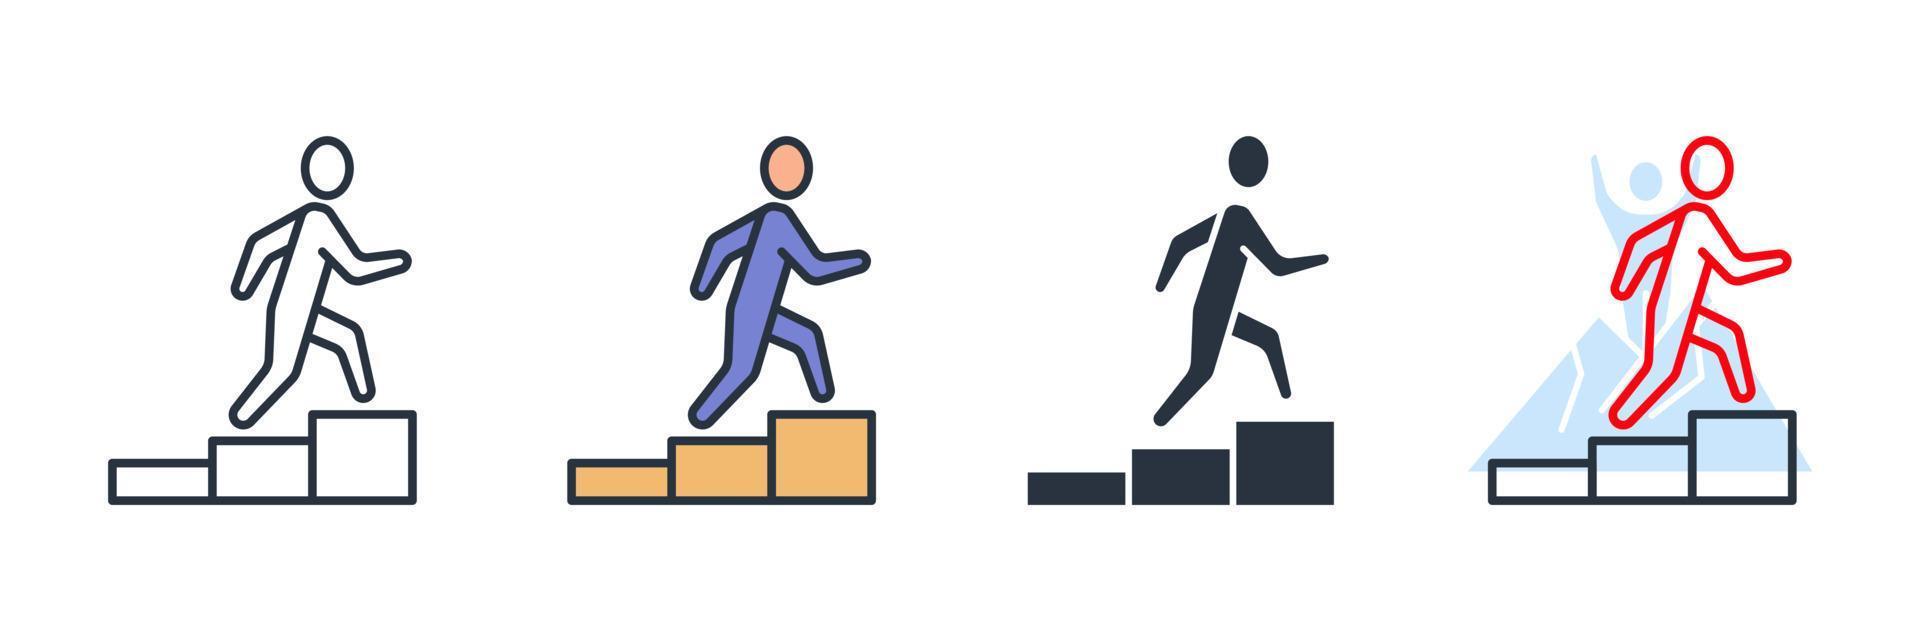 ilustração em vetor carreira ícone logotipo. modelo de símbolo de escalada de pessoas no andar de cima para coleção de design gráfico e web